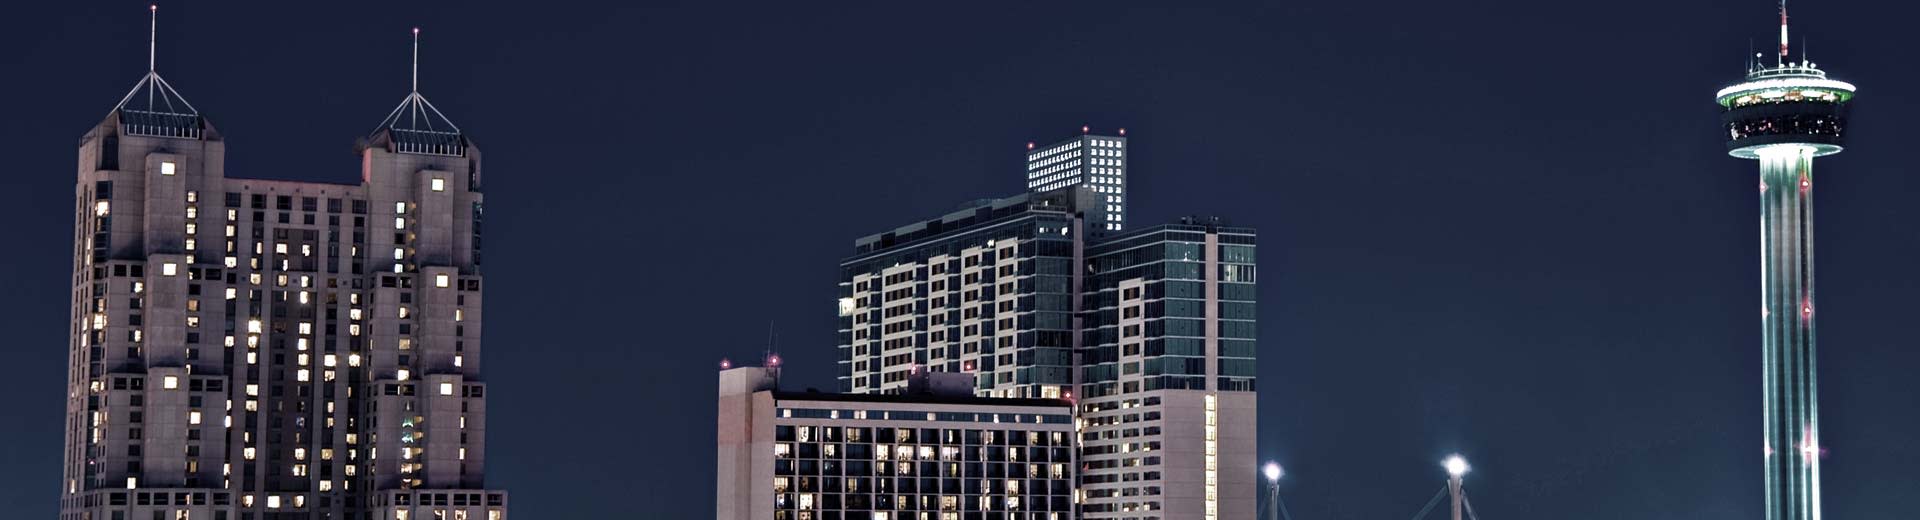 Dos imponentes rascacielos perforan el cielo nocturno sin estrellas en San Antonio.